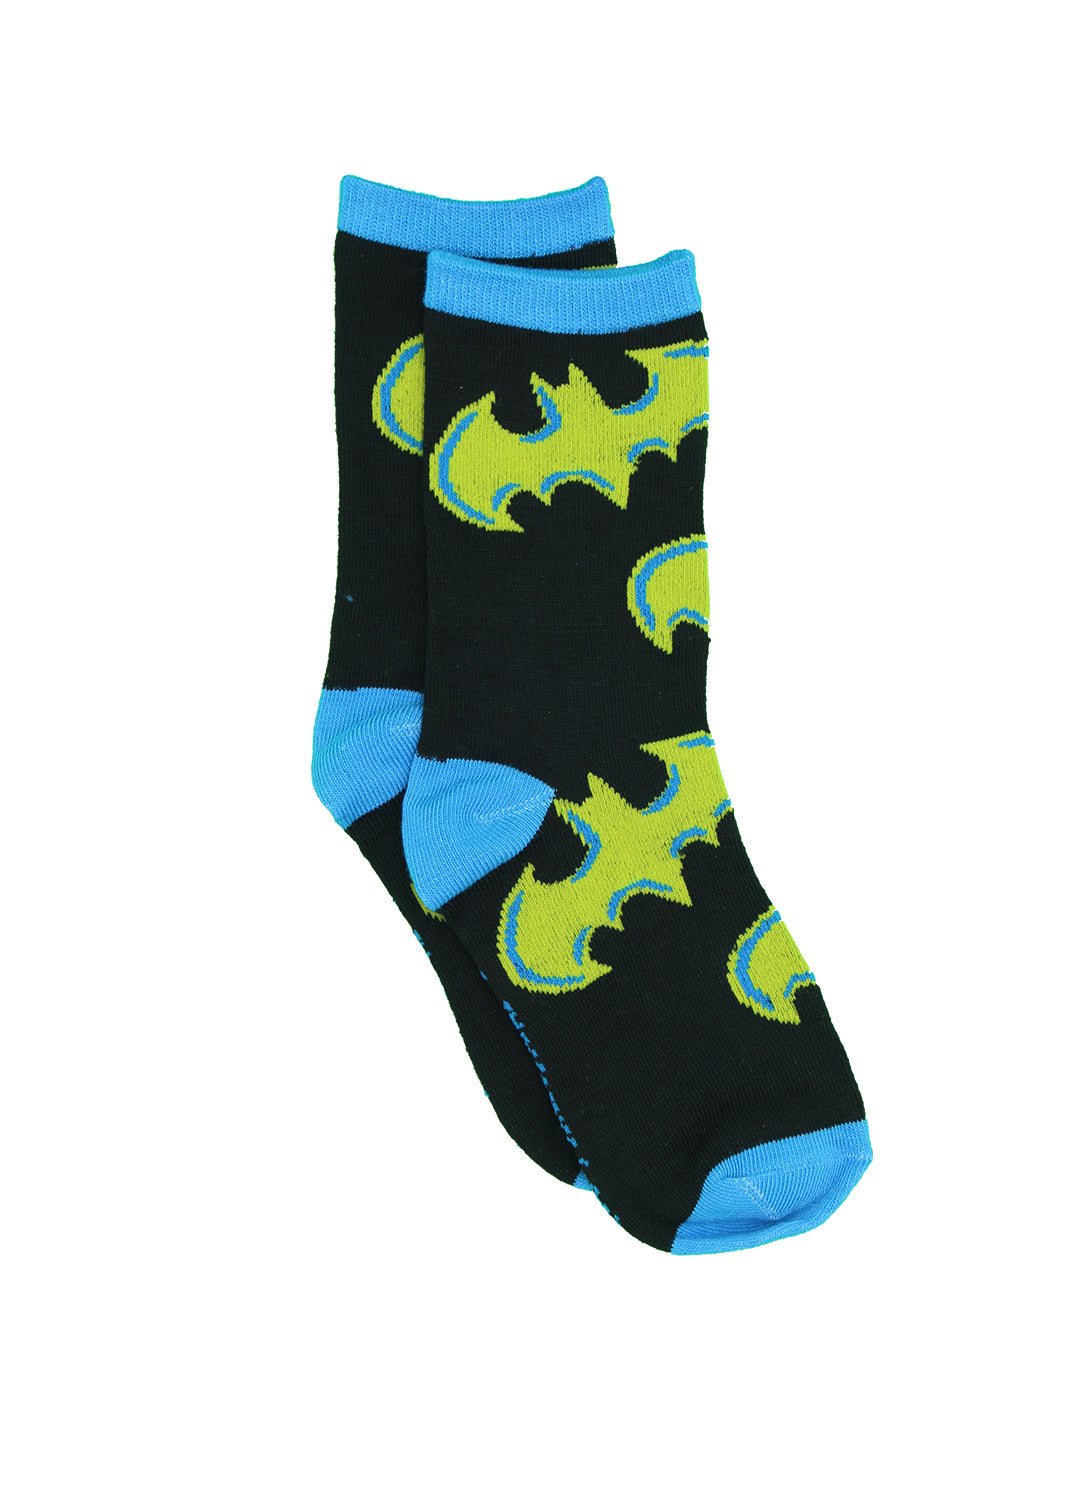 Chaussettes Batman pour garçons - Paquet de 6